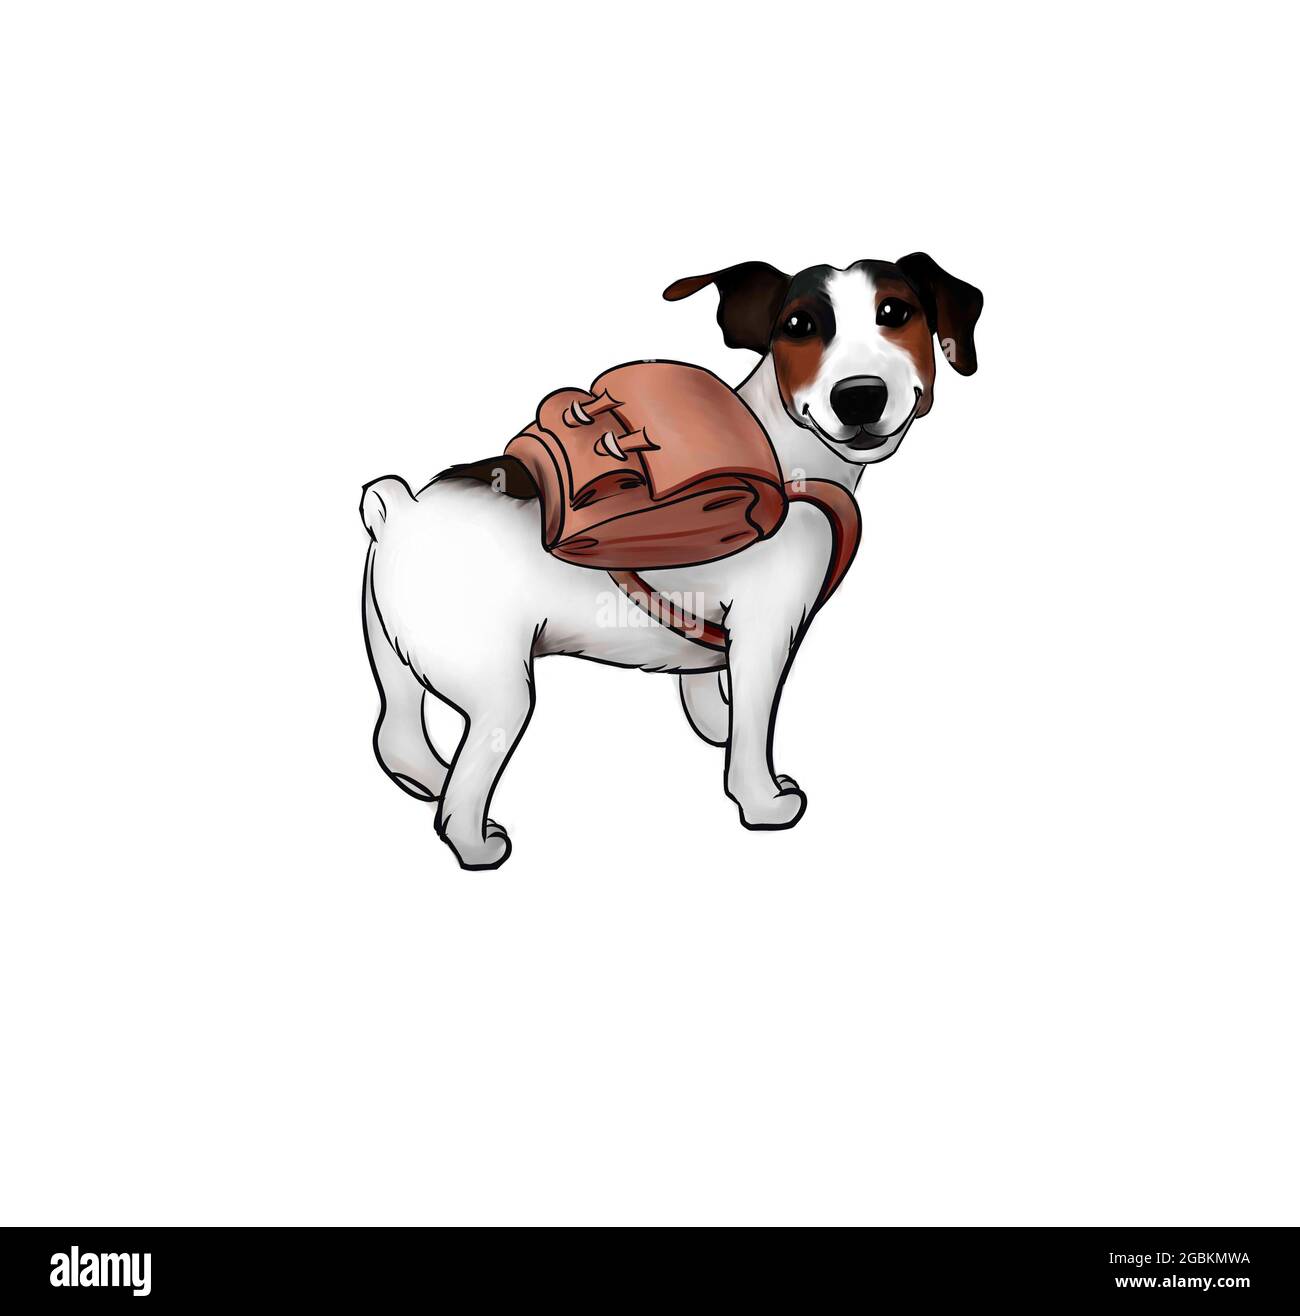 Un joli chien voyage avec un sac à dos. Chiot noir et blanc avec un sac sur ses épaules. Illustration isolée sur fond blanc. Banque D'Images